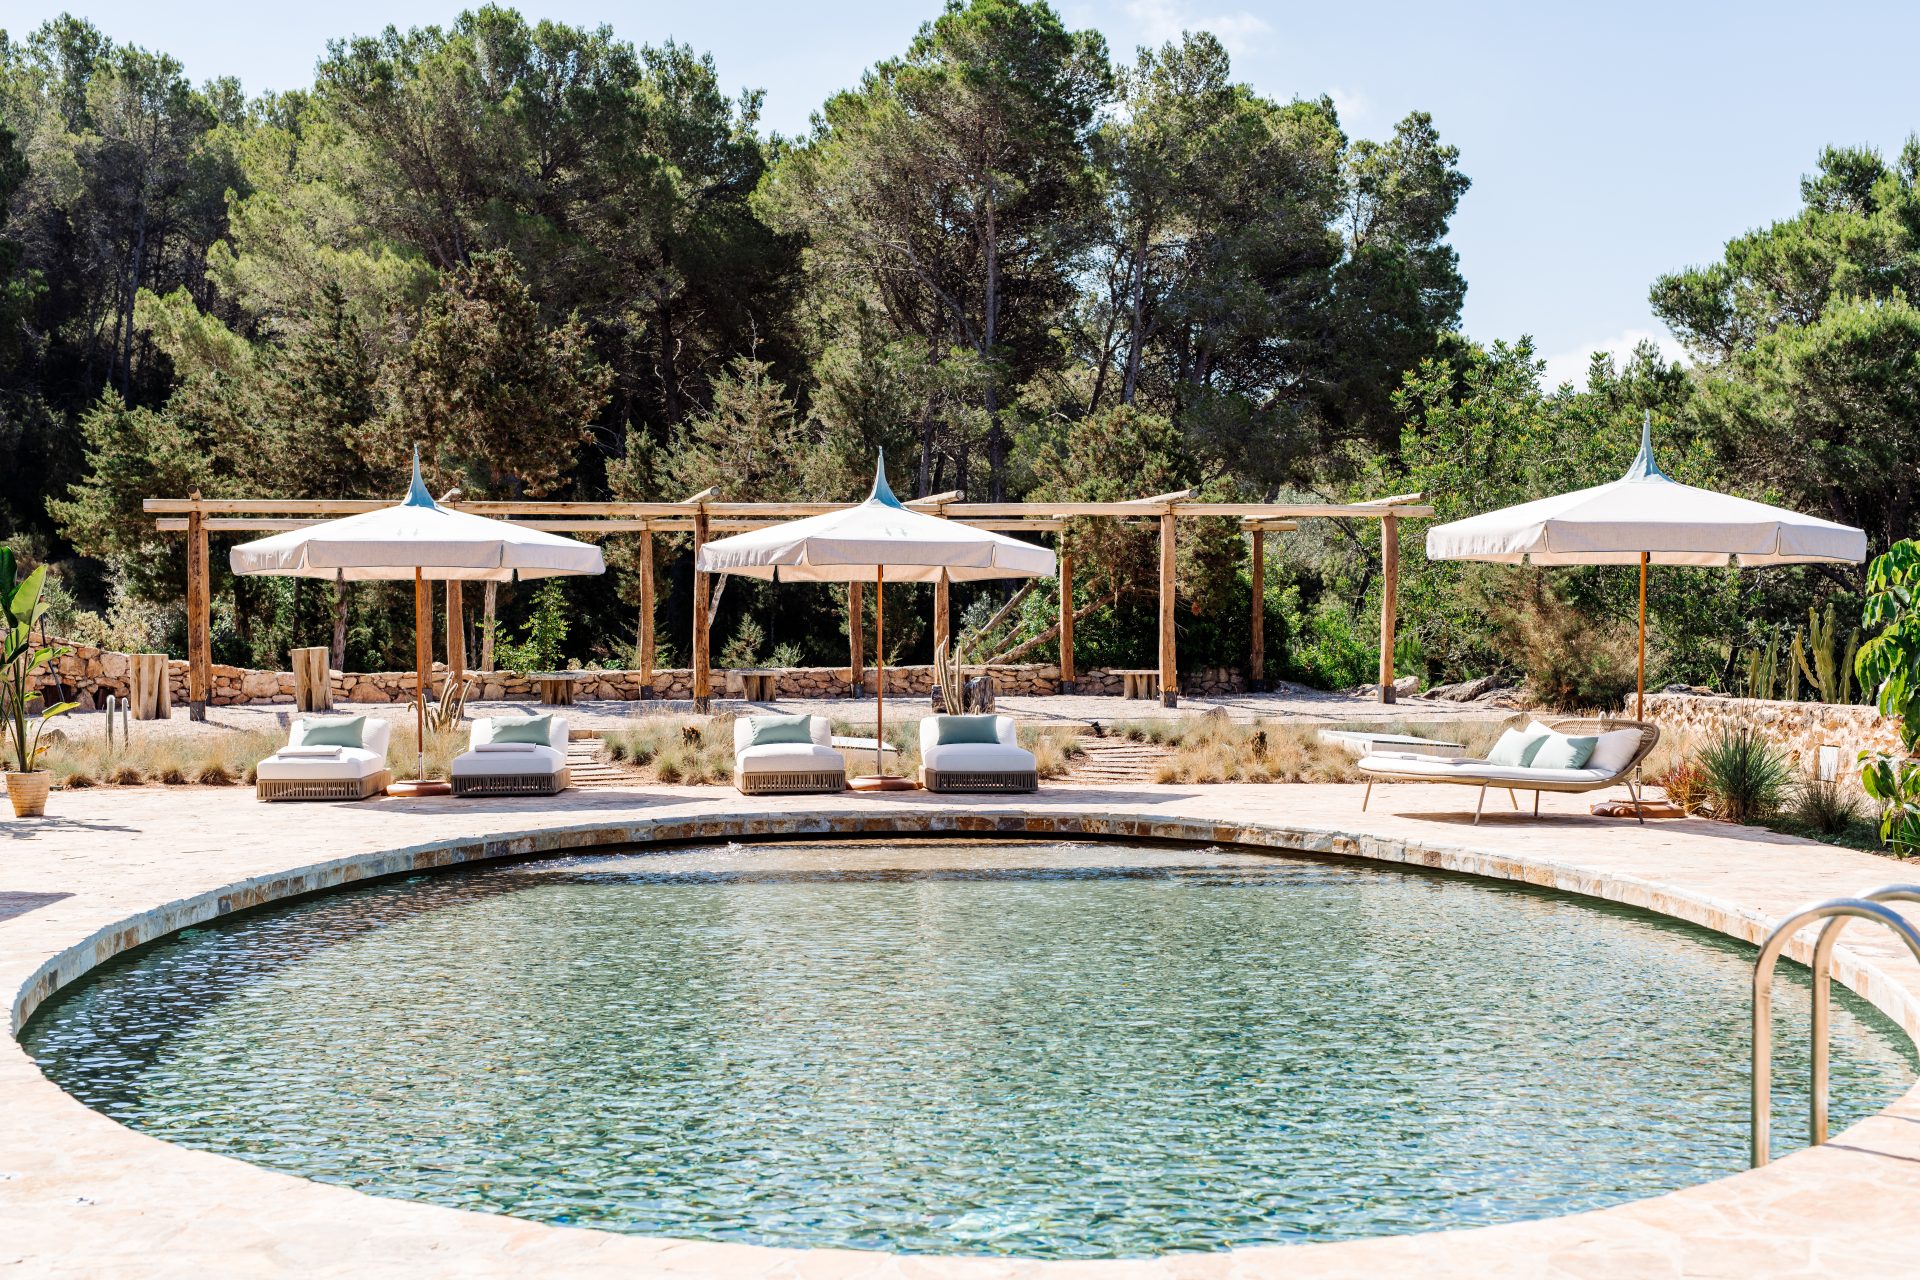 FincaDelica 6 5 x droomvilla’s op Ibiza: Hier slapen de sterren